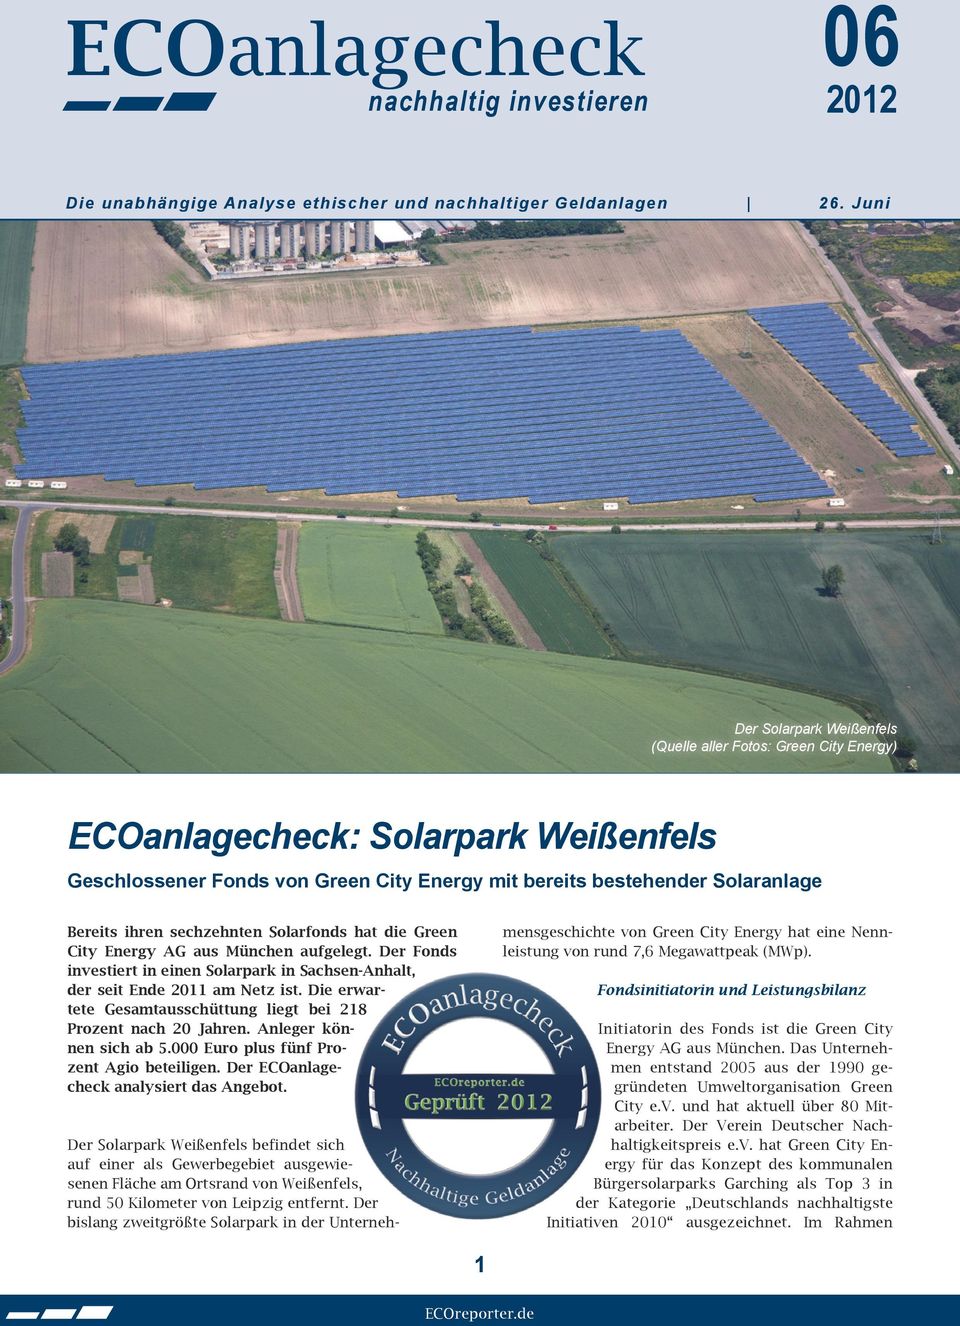 sechzehnten Solarfonds hat die Green City Energy AG aus München aufgelegt. Der Fonds investiert in einen Solarpark in Sachsen-Anhalt, der seit Ende 2011 am Netz ist.